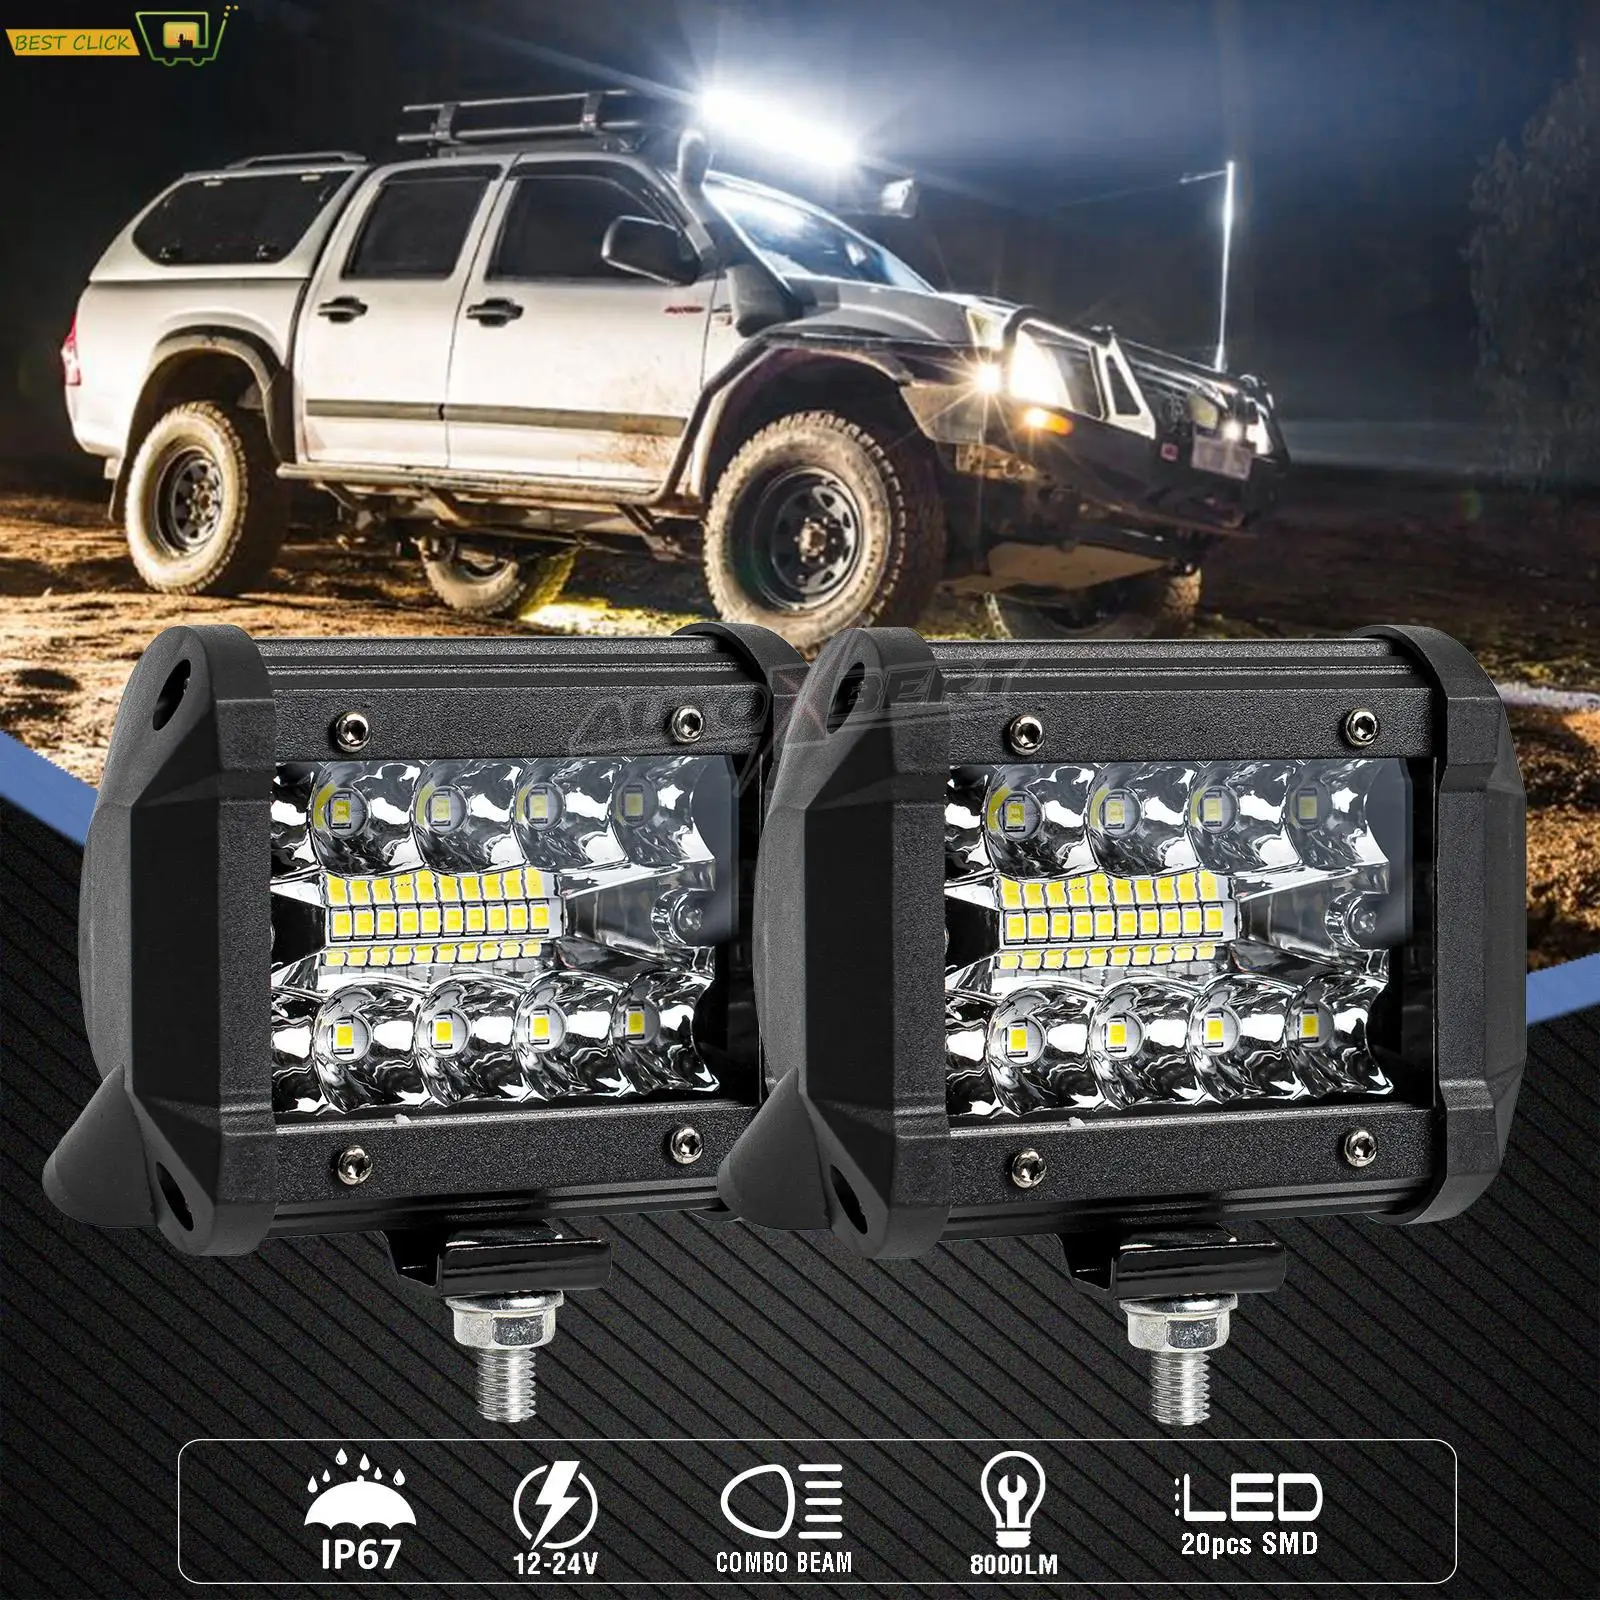 2pcs Car LED Bar Worklight 60W Offroad Work Light 12V Spot Lighting Lamp 4x4 LED Tractor Headlight Bulbs Spotlight Truck ATV UTV